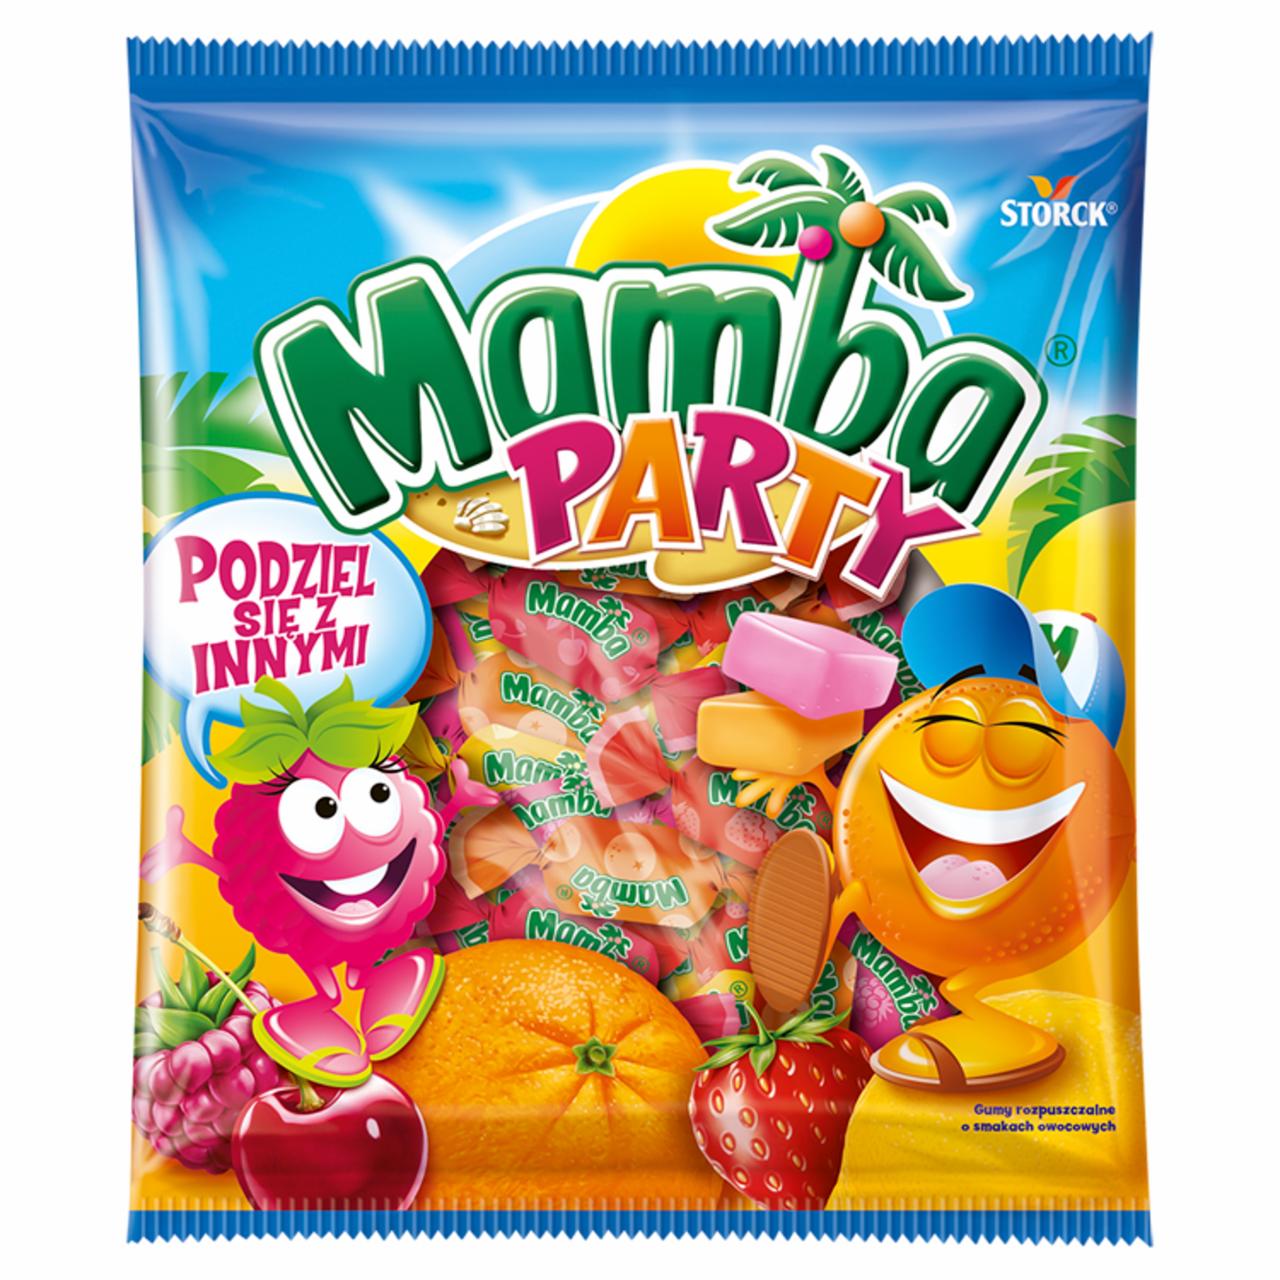 Zdjęcia - Mamba Party Gumy rozpuszczalne o smakach owocowych 150 g